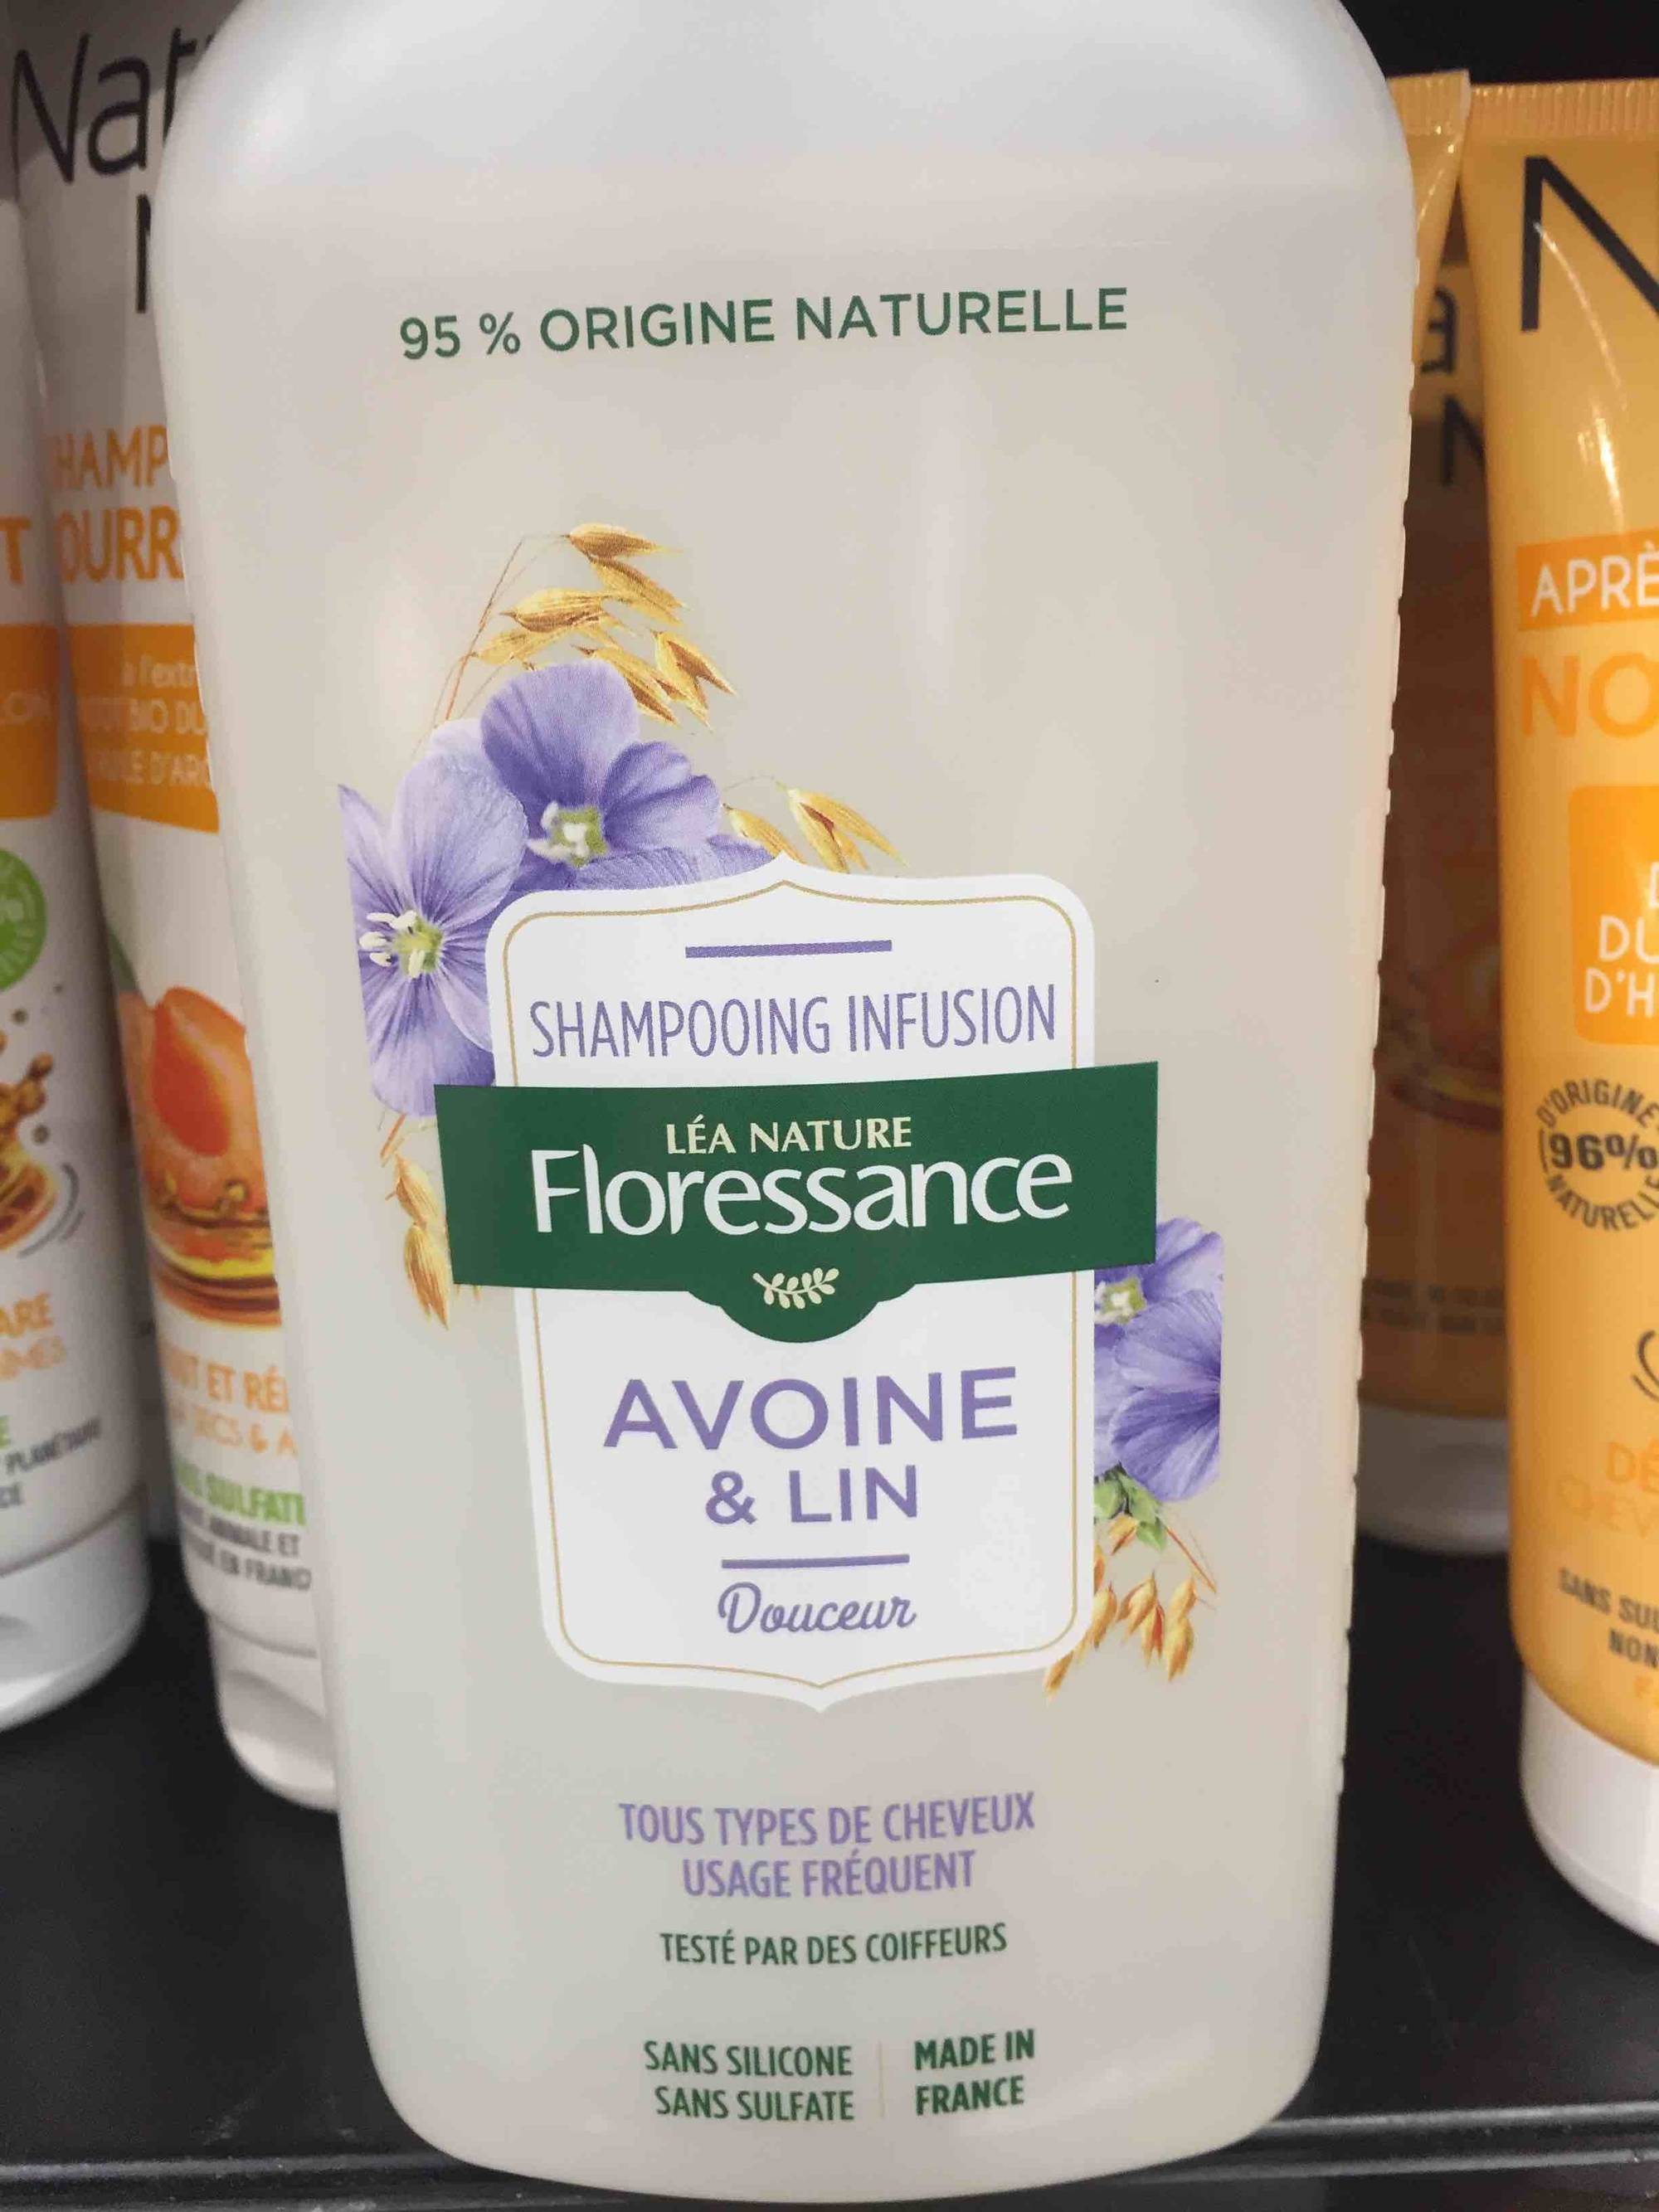 FLORESSANCE - Avoine & lin - Shampooing infusion douceur